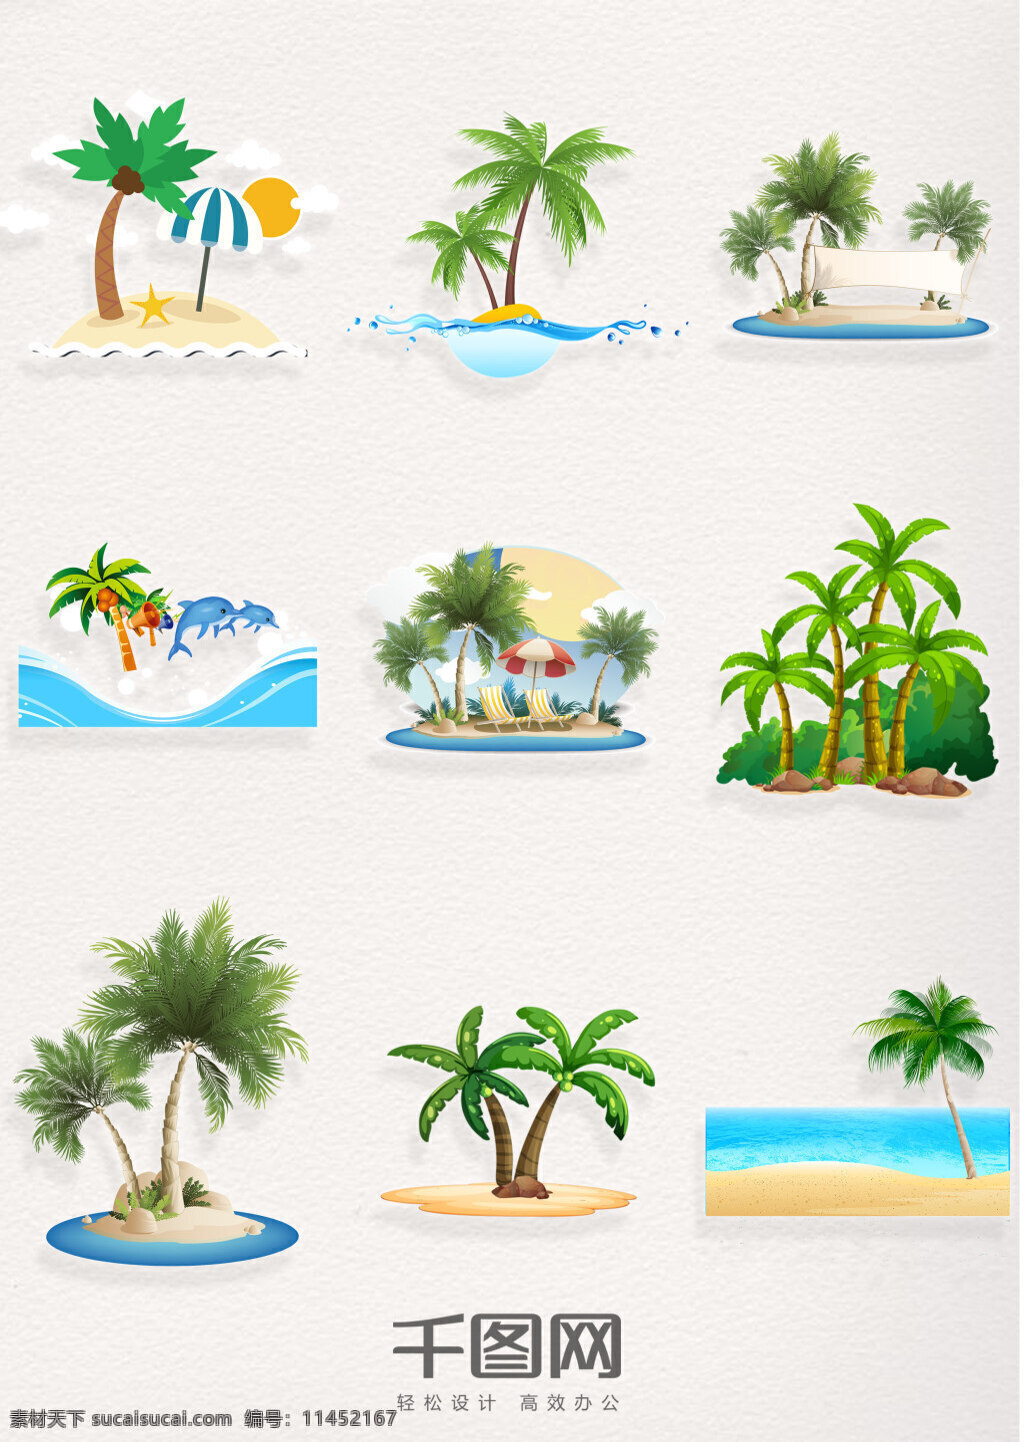 组 海岛 椰子树 沙滩风景 手绘椰子树 椰子树海边 沙滩椰子树 椰子树位图 海边椰子树 绿色植物 ps椰子树